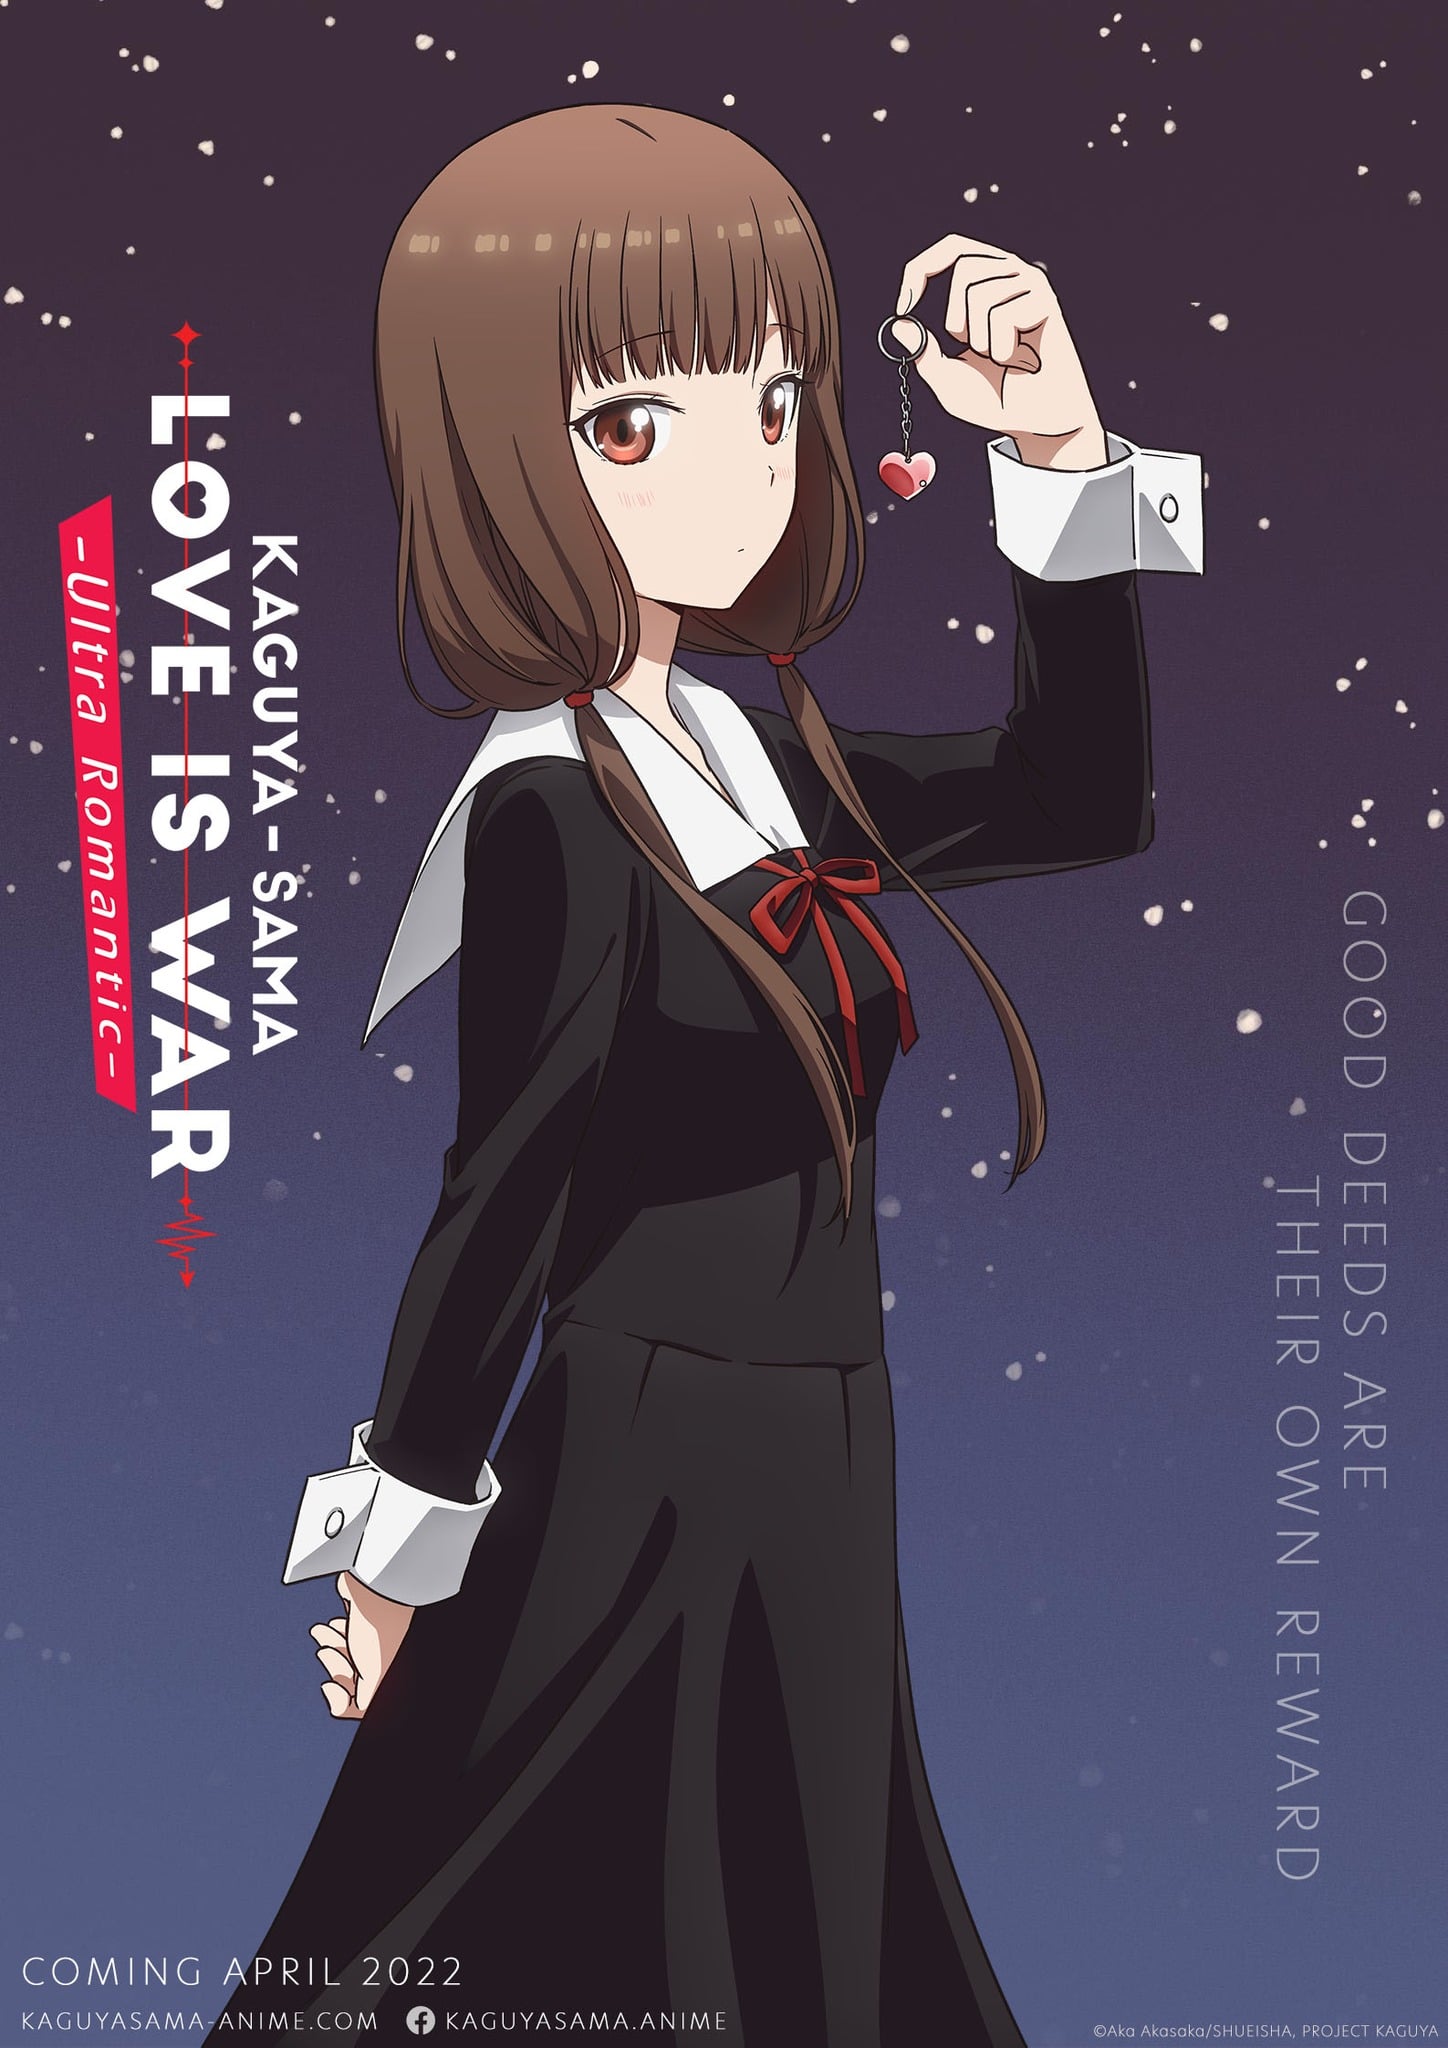 Kaguya-sama: Love is War Anime Season 3 in April 2022 & PV